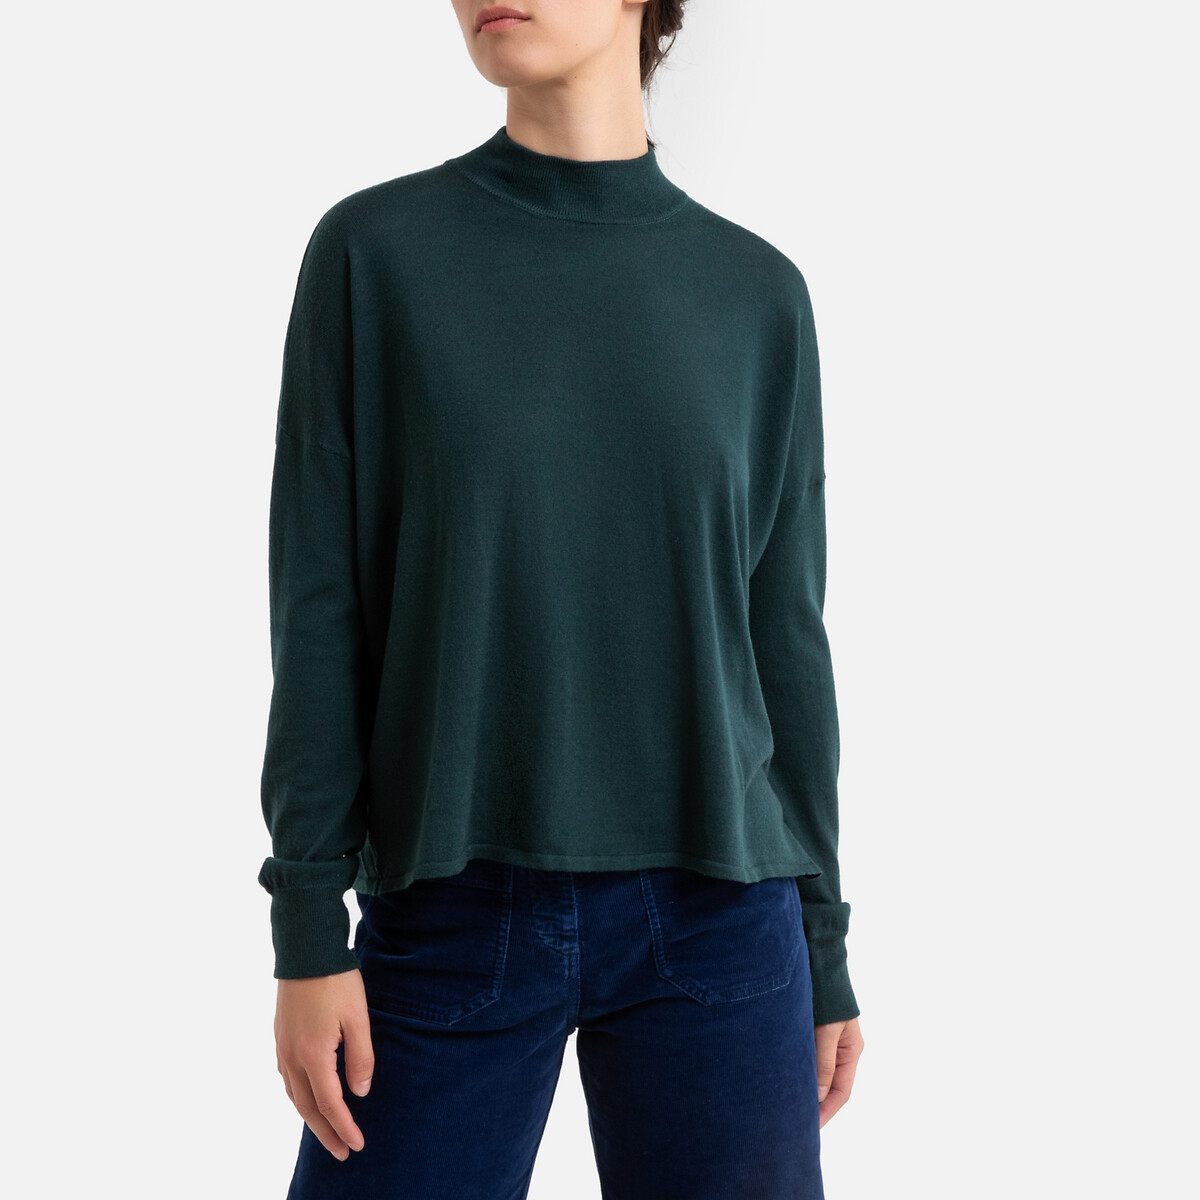 Пуловер La Redoute С воротником-стойкой из тонкого трикотажа MASSA XS зеленый, размер XS - фото 1